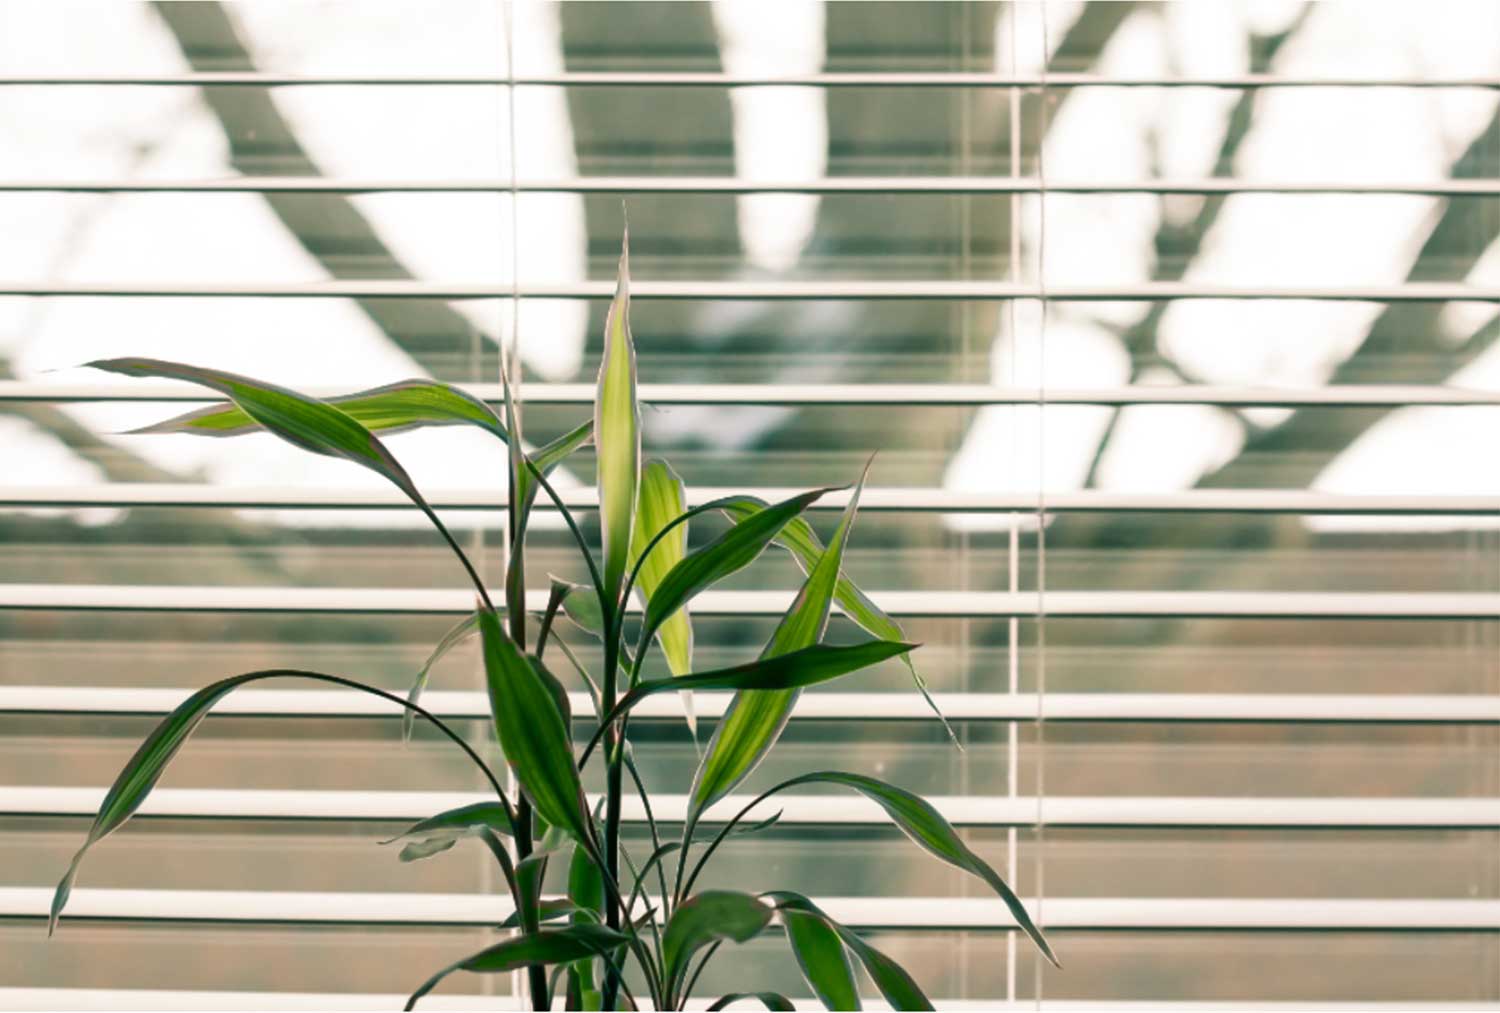 jaloezieen-raam-plant